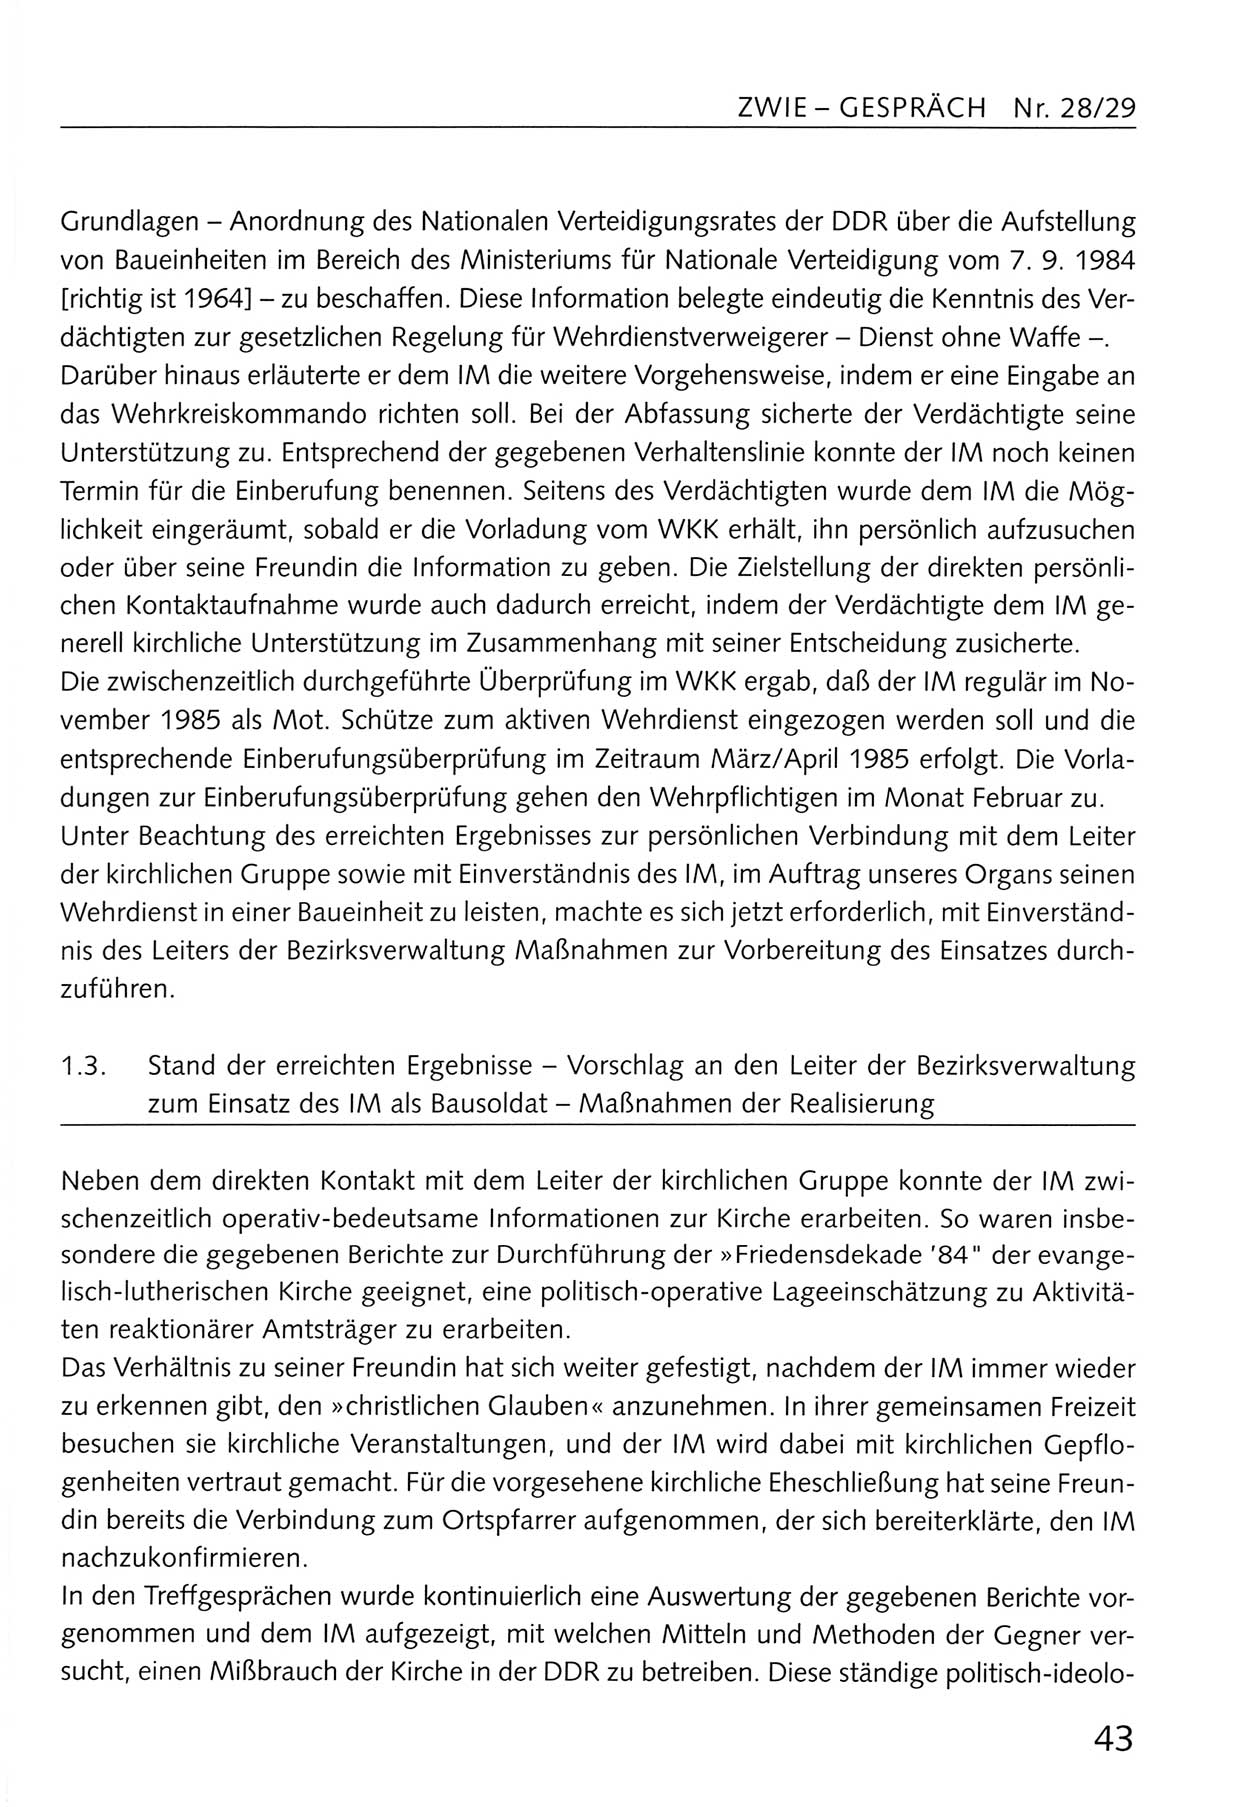 Zwie-Gespräch, Beiträge zum Umgang mit der Staatssicherheits-Vergangenheit [Deutsche Demokratische Republik (DDR)], Ausgabe Nr. 28/29, Berlin 1995, Seite 43 (Zwie-Gespr. Ausg. 28/29 1995, S. 43)